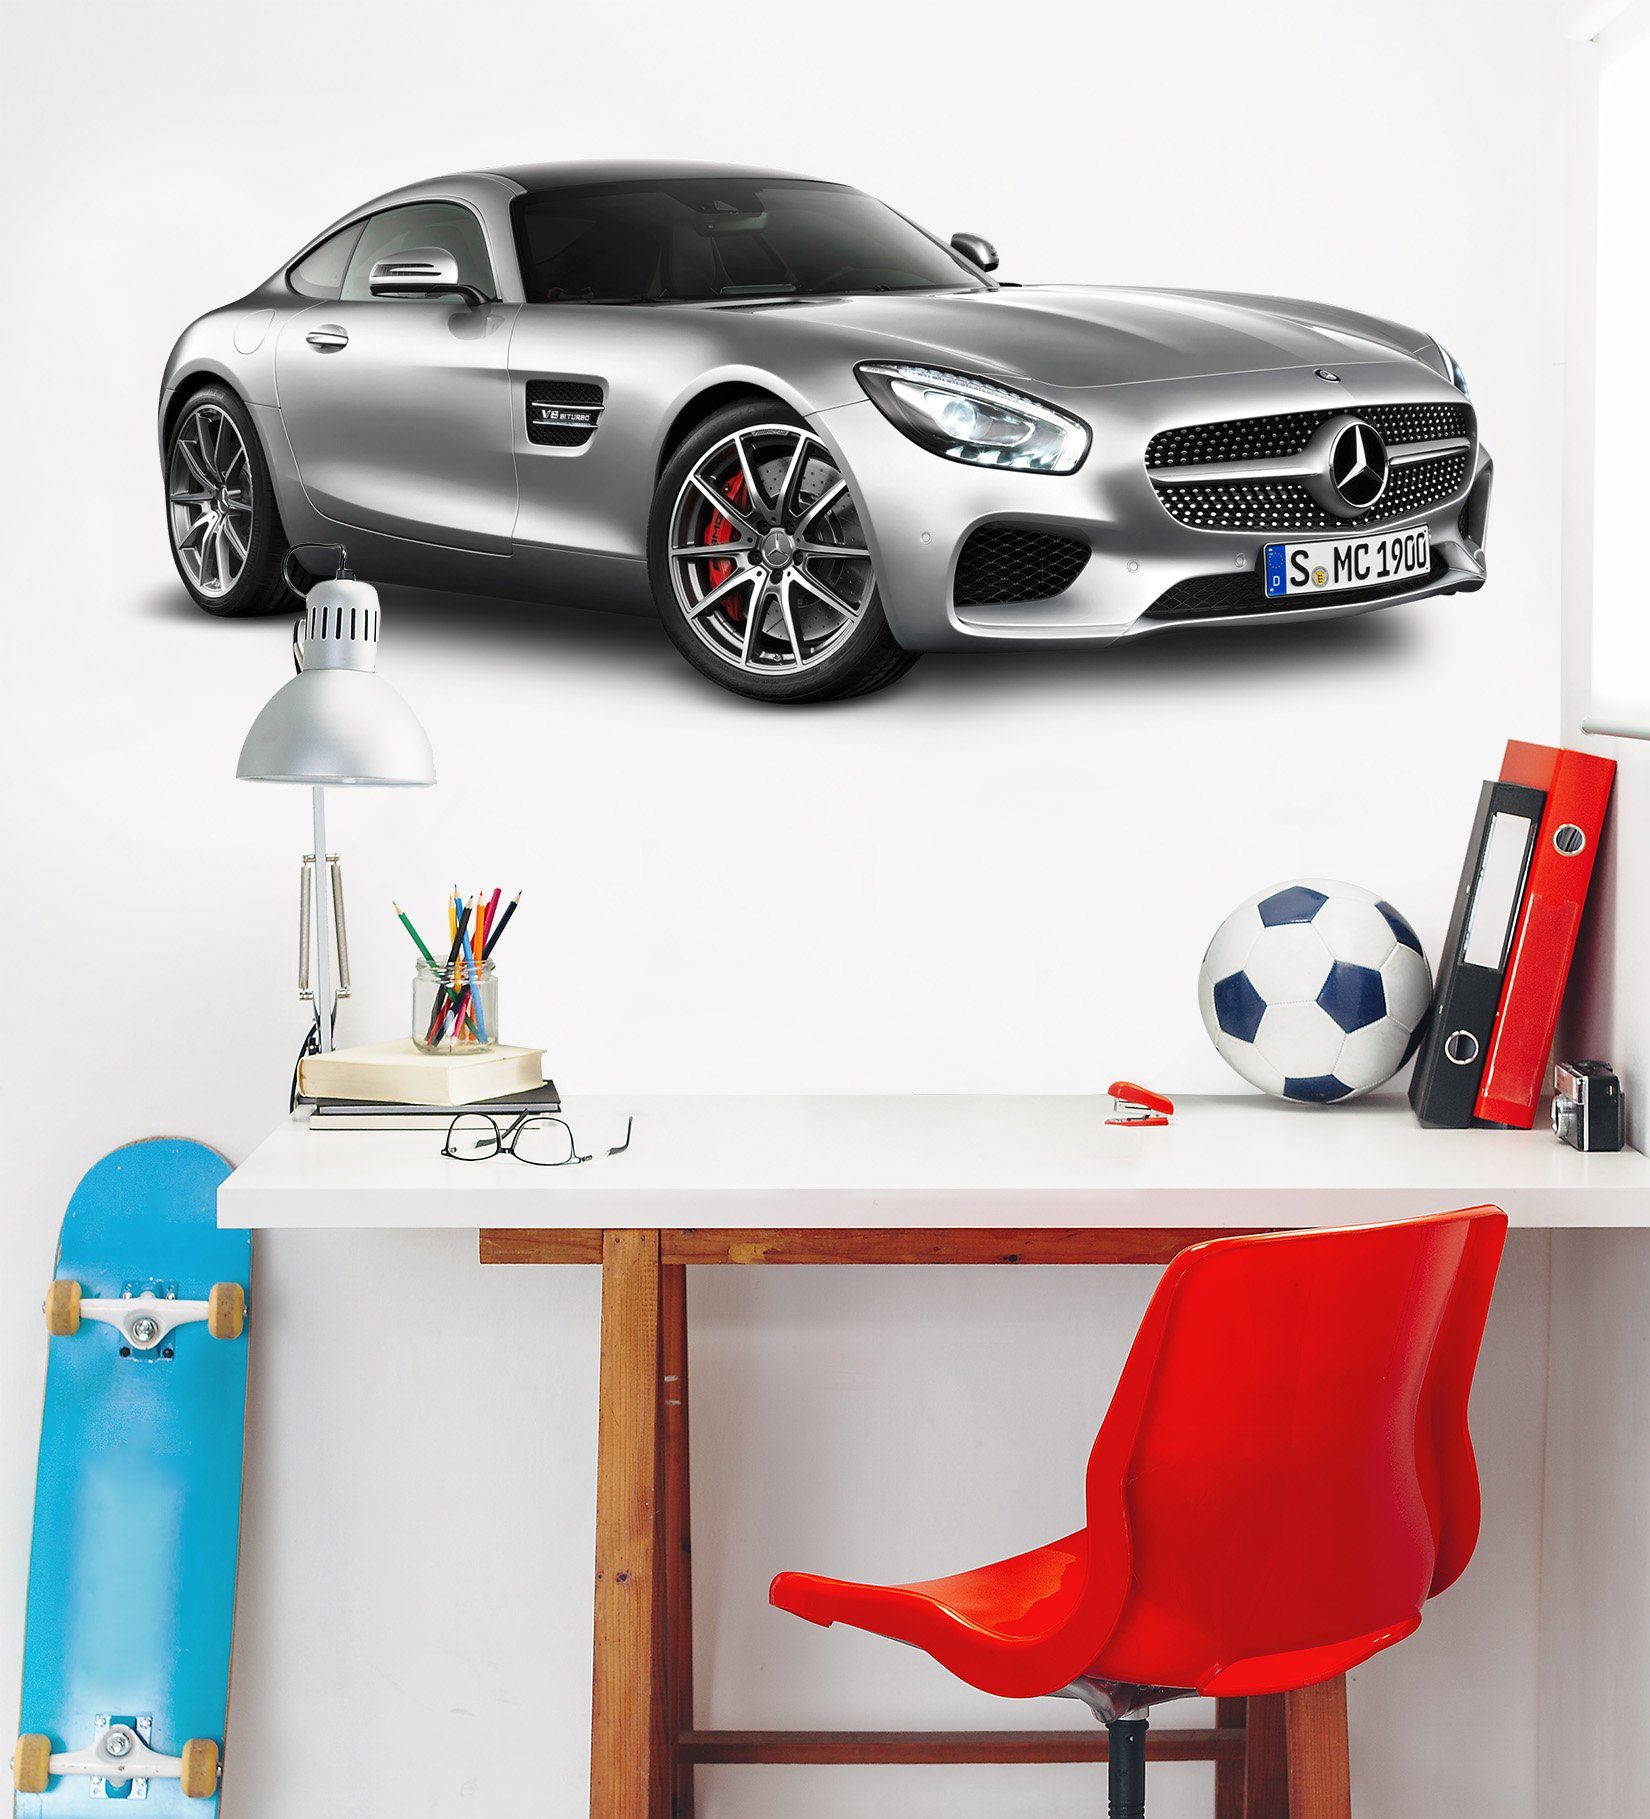 3D Mercedes Deportivos 174 Vehicles Wallpaper AJ Wallpaper 